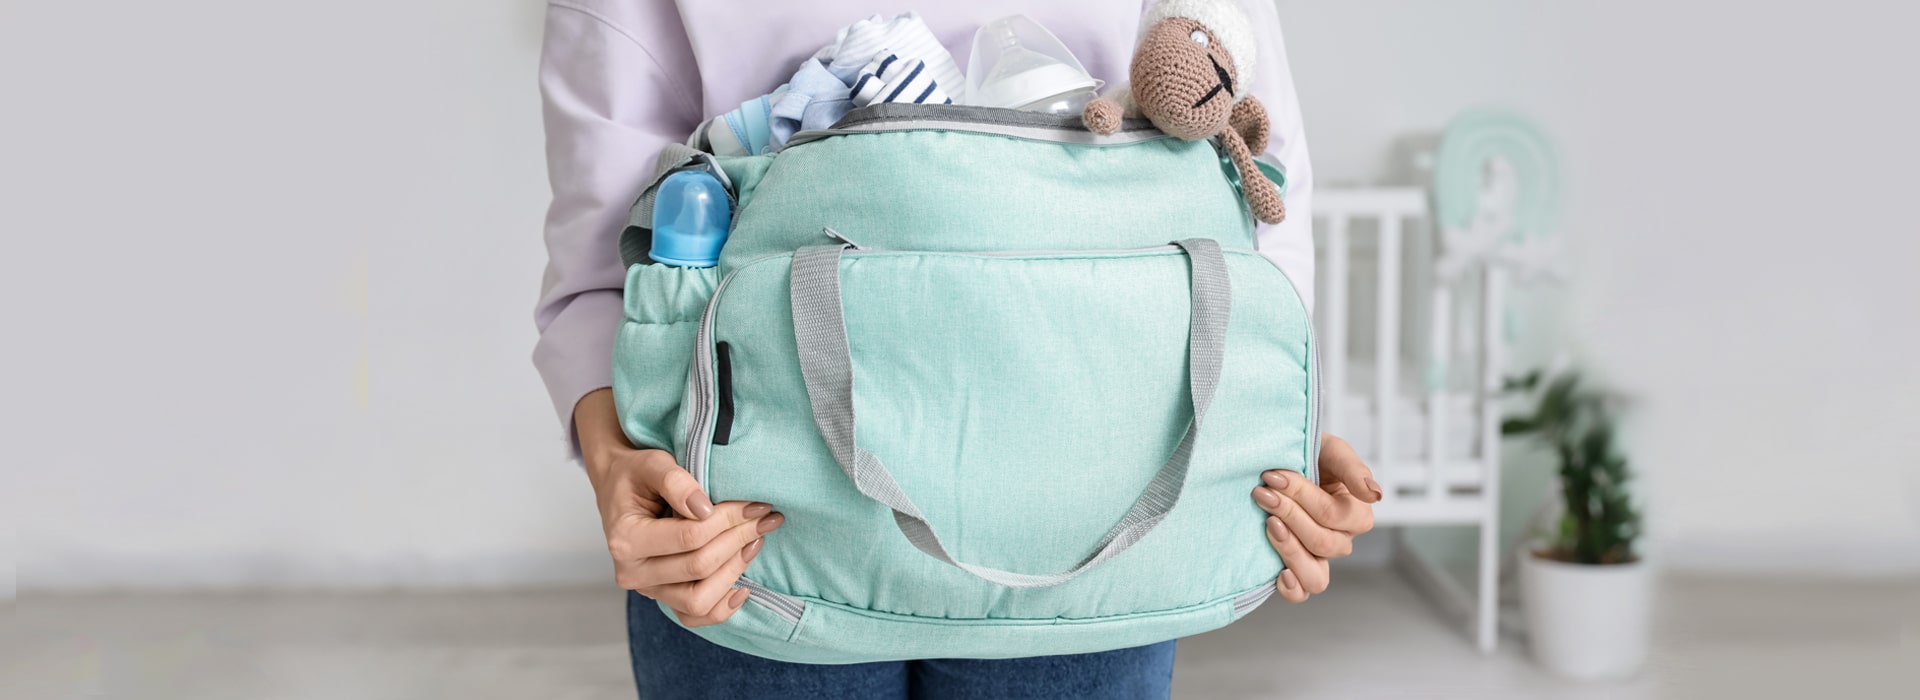 Uscire di casa con il bebè: gli accessori neonato da non dimenticare